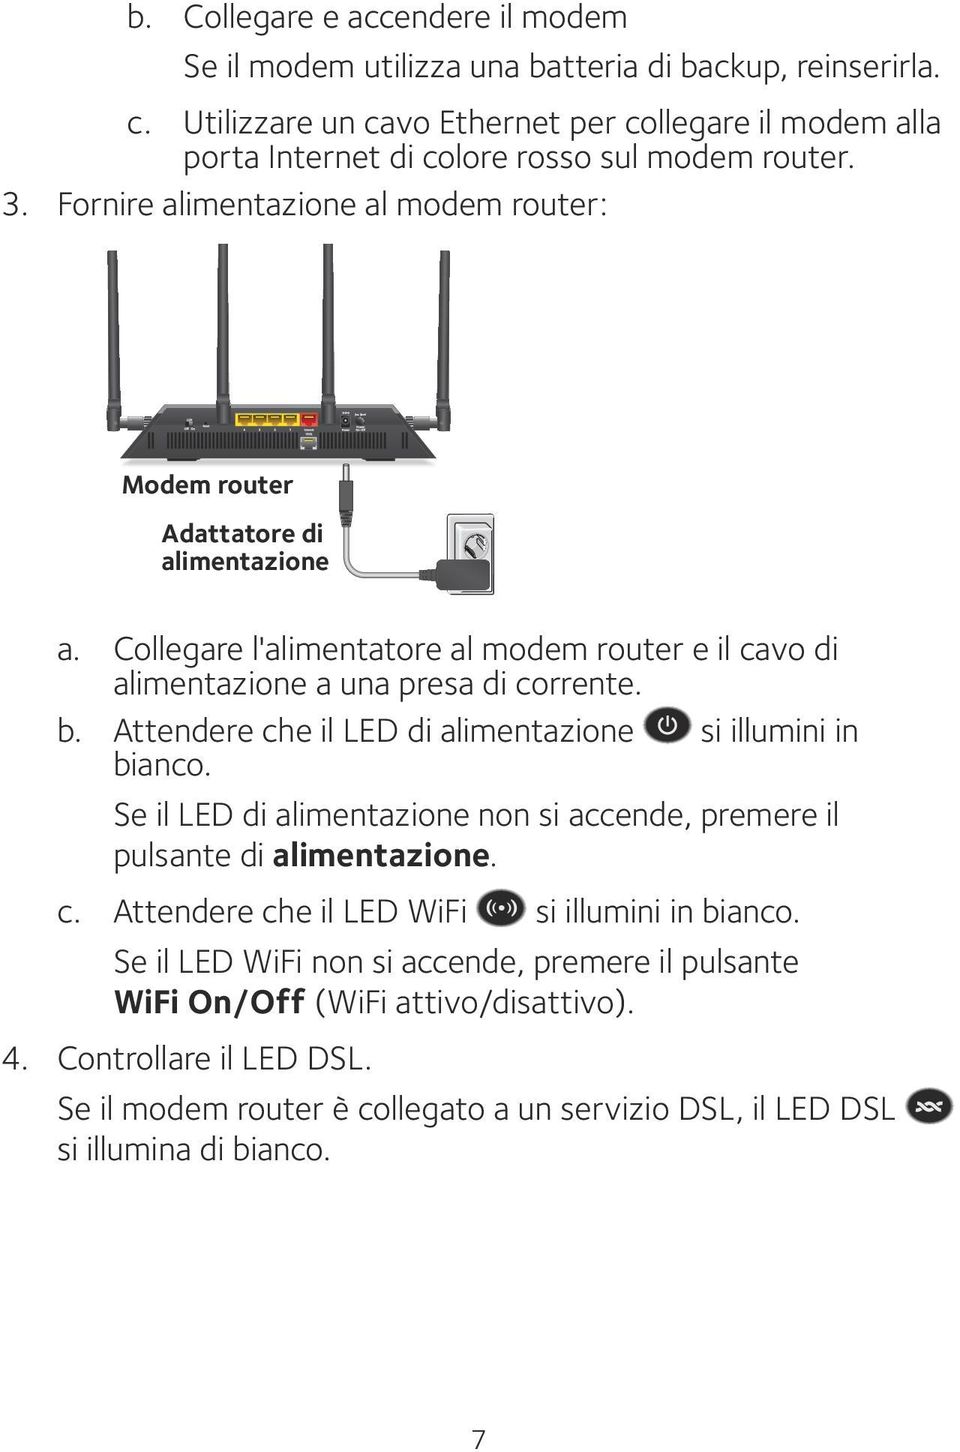 Collegare l'alimentatore al modem router e il cavo di alimentazione a una presa di corrente. b. Attendere che il LED di alimentazione si illumini in bianco.